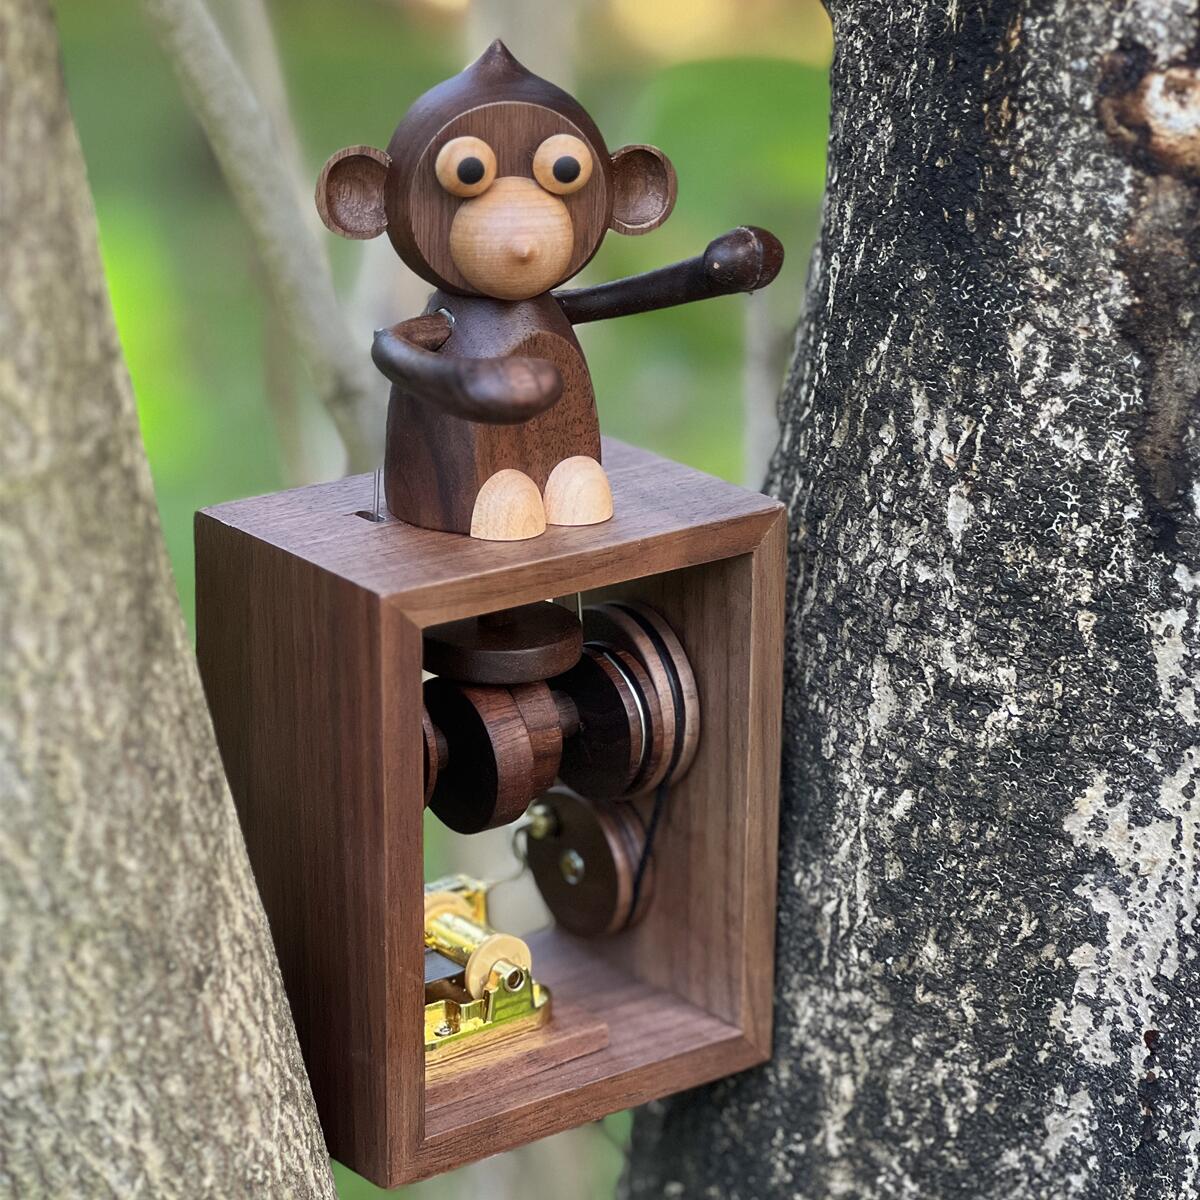 Handgefertigte Spieluhr aus Holz mit Handkurbel und Affenmotiv (Melodie „Das Schloss im Himmel“)